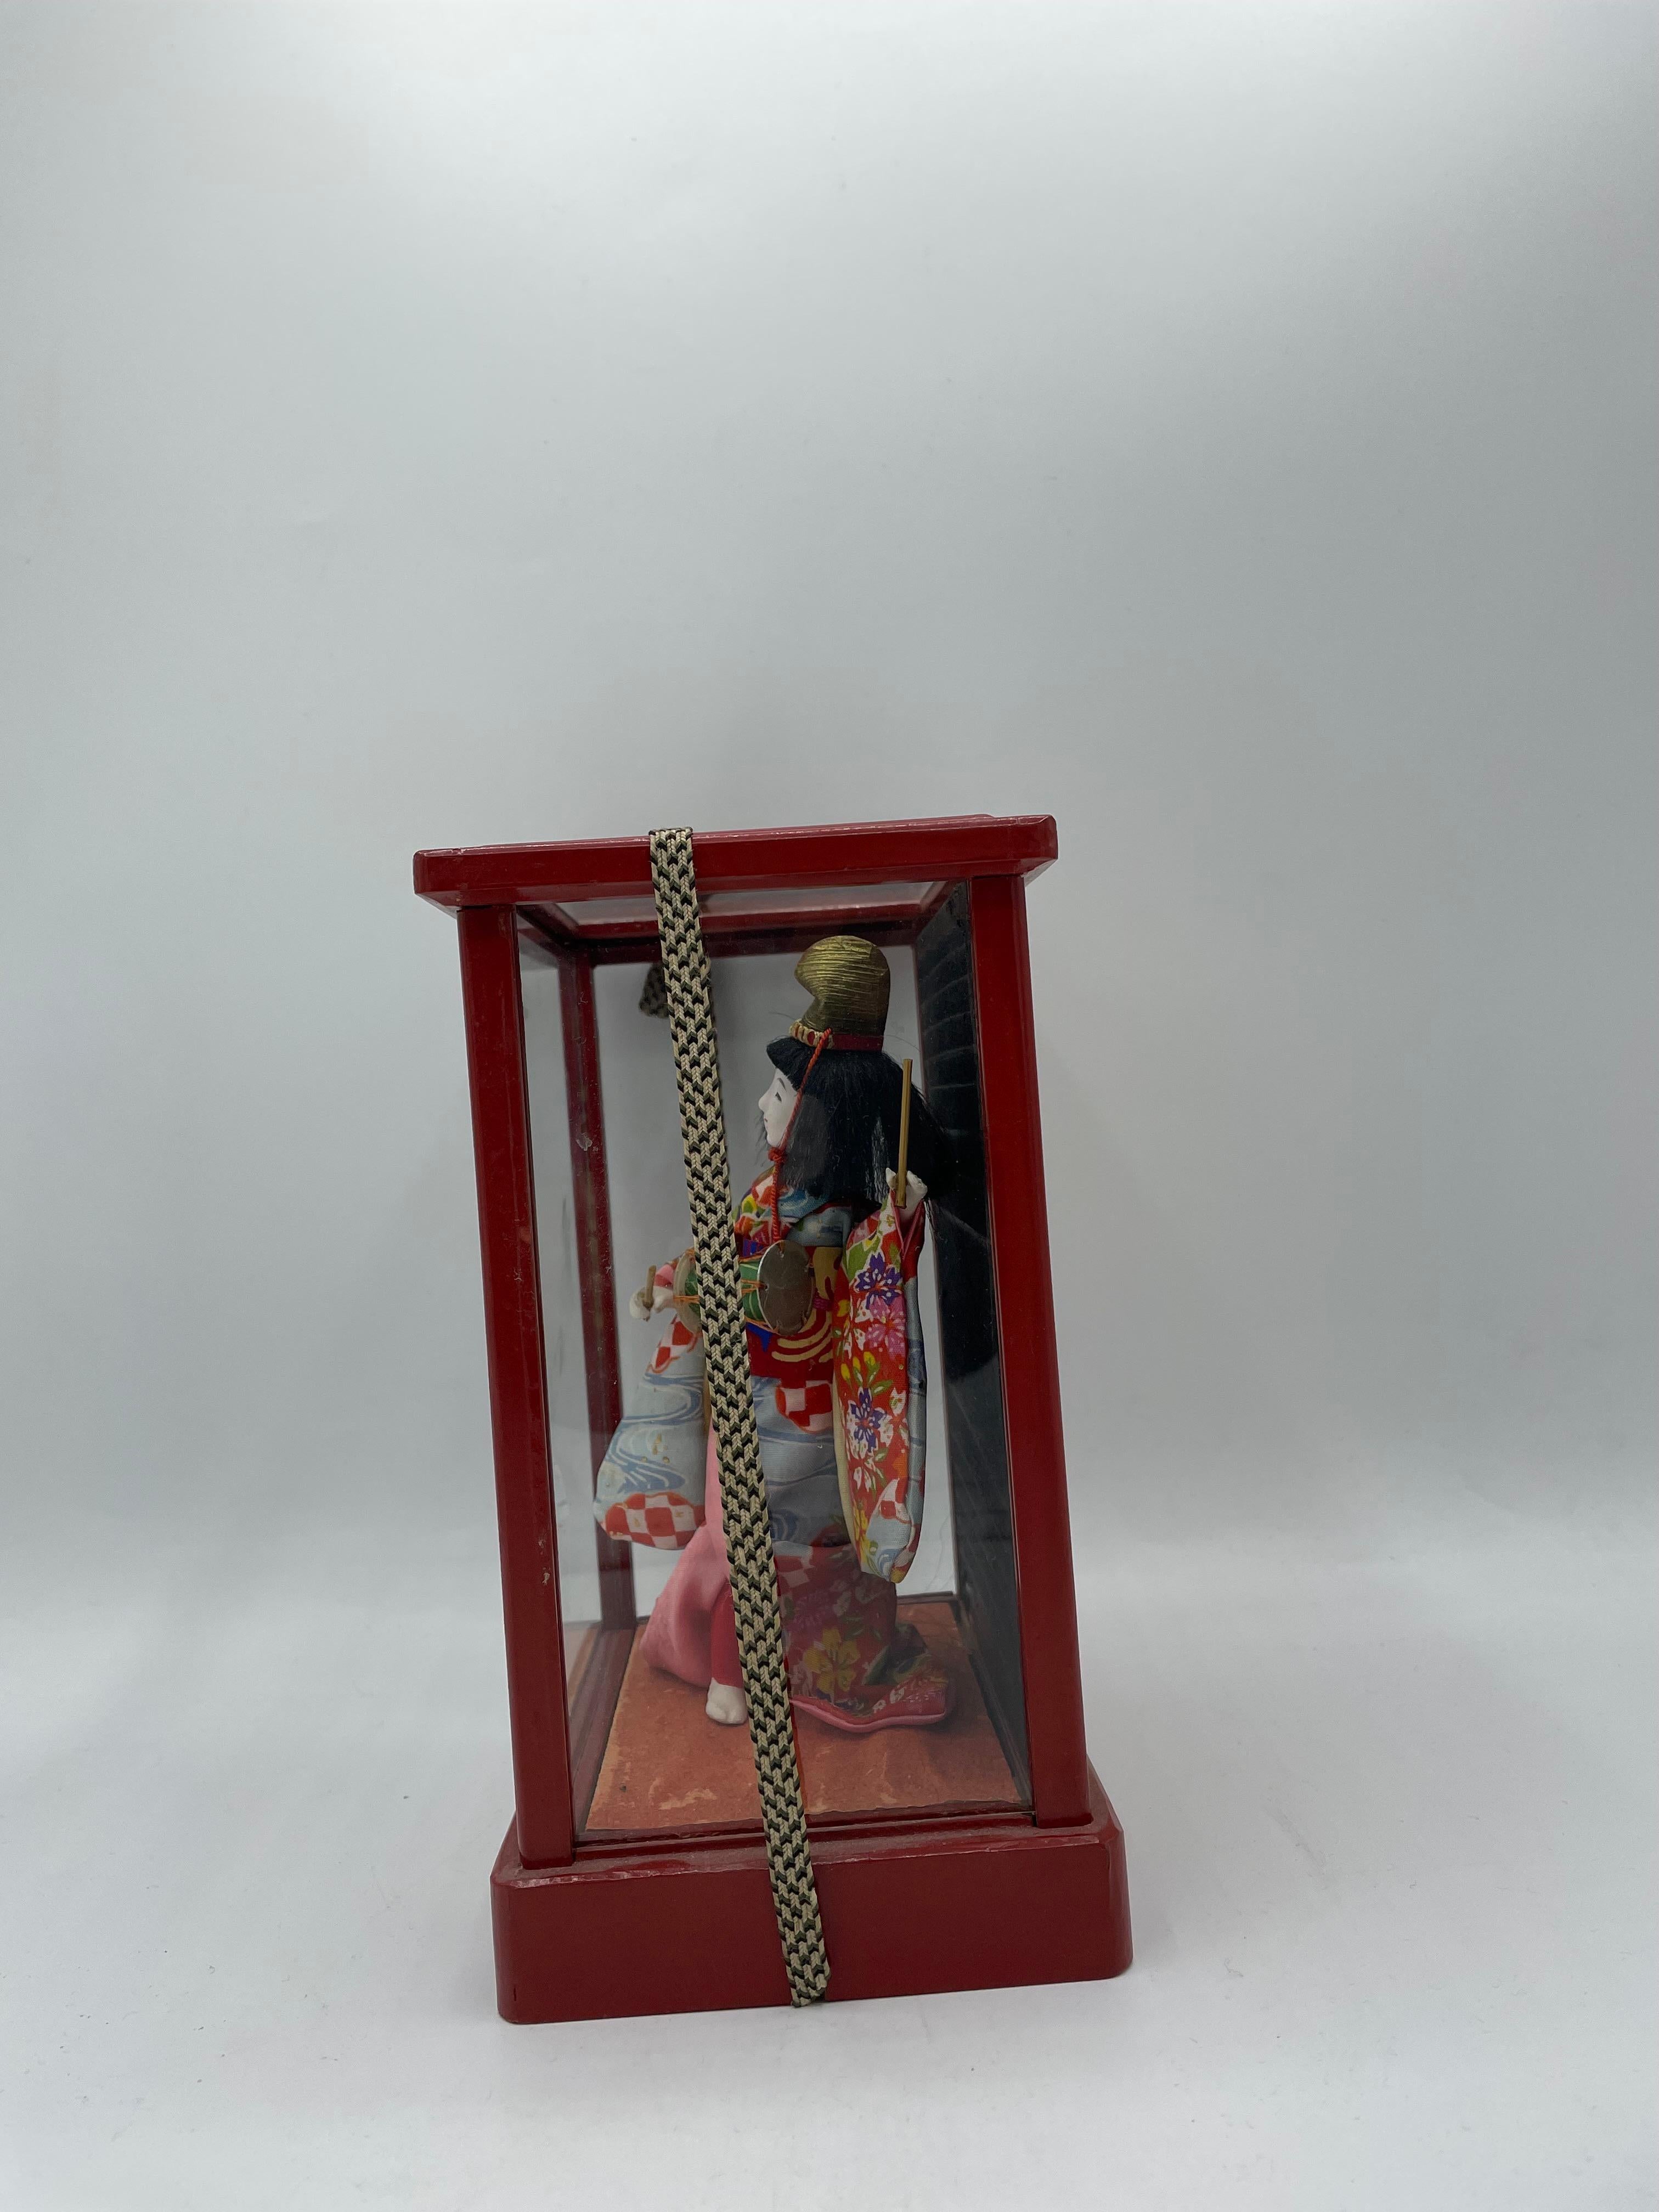 Il s'agit d'une poupée traditionnelle japonaise qui a été fabriquée en 1970 à l'ère Showa.
Cette poupée se trouve dans une boîte en bois et en verre.
Cette poupée est en porcelaine et porte un kimono en soie.

Dimensions :
H20 x 14.5 x 10.5 cm
